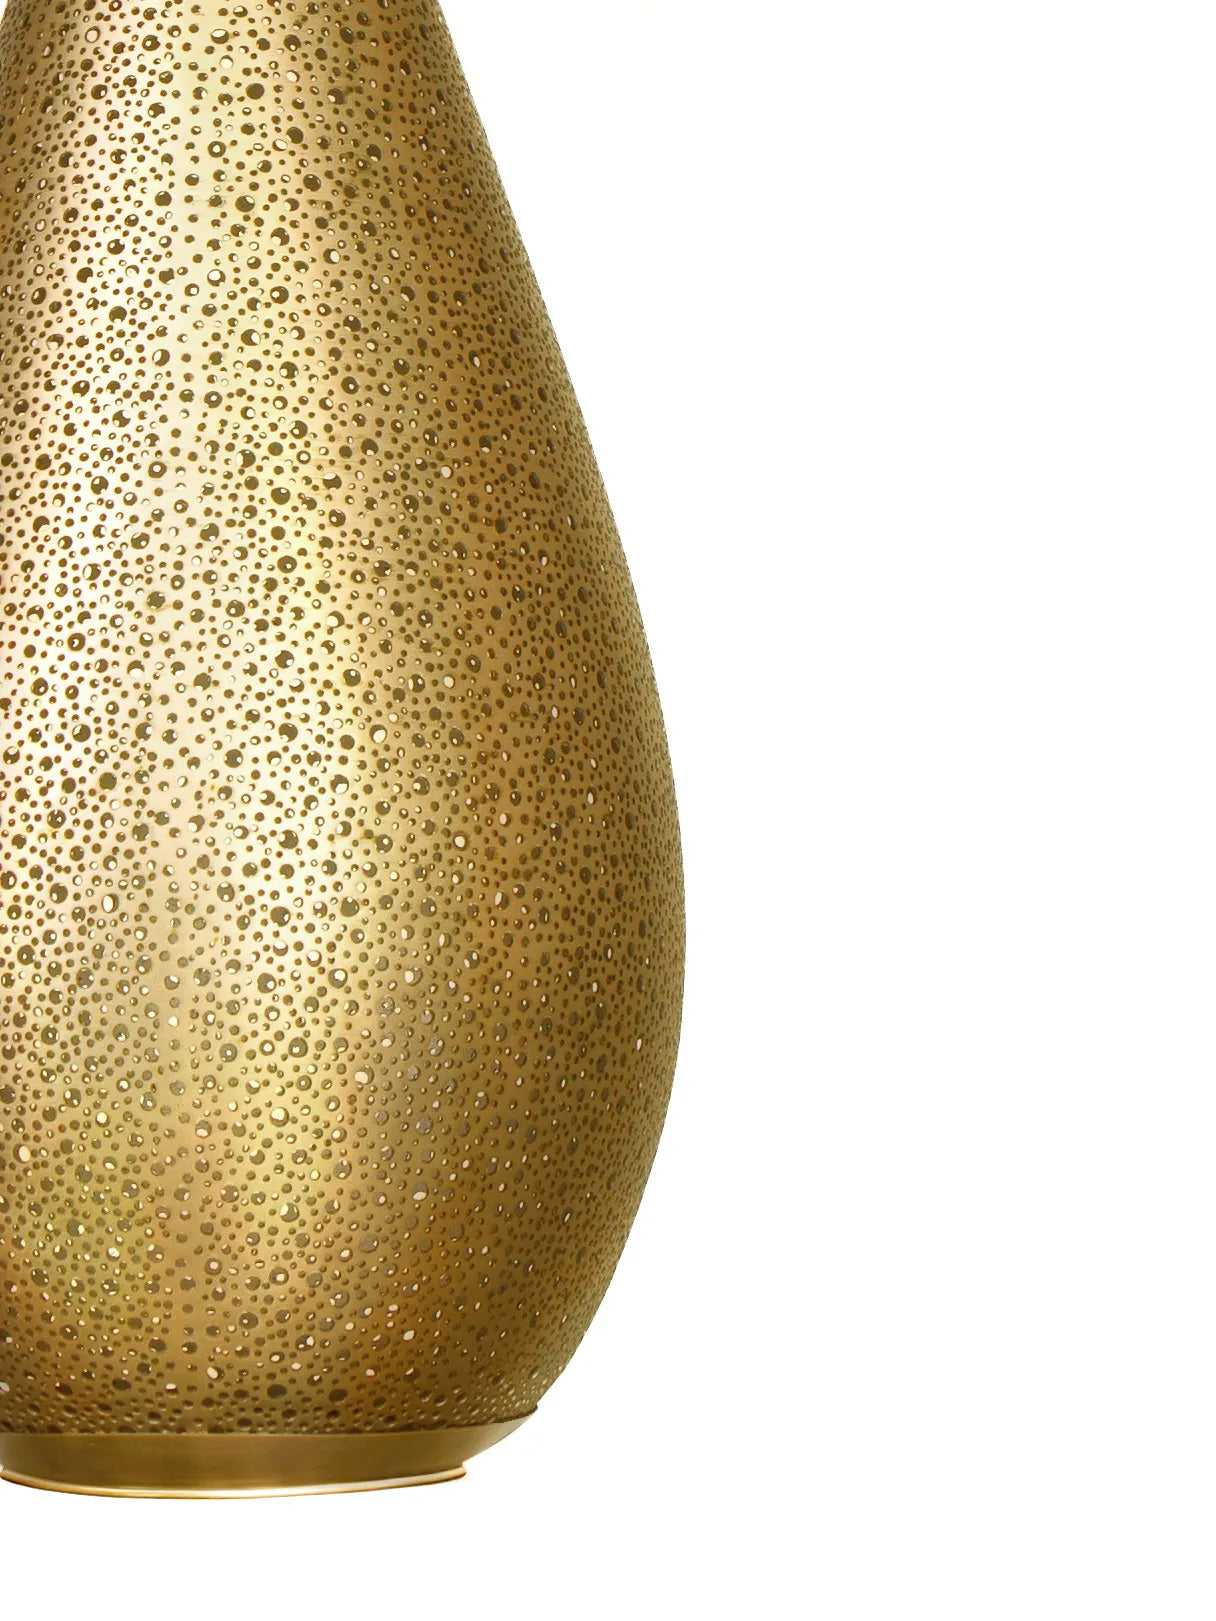 Golden joy droplet: copper pendant-Large, 58x20 cm